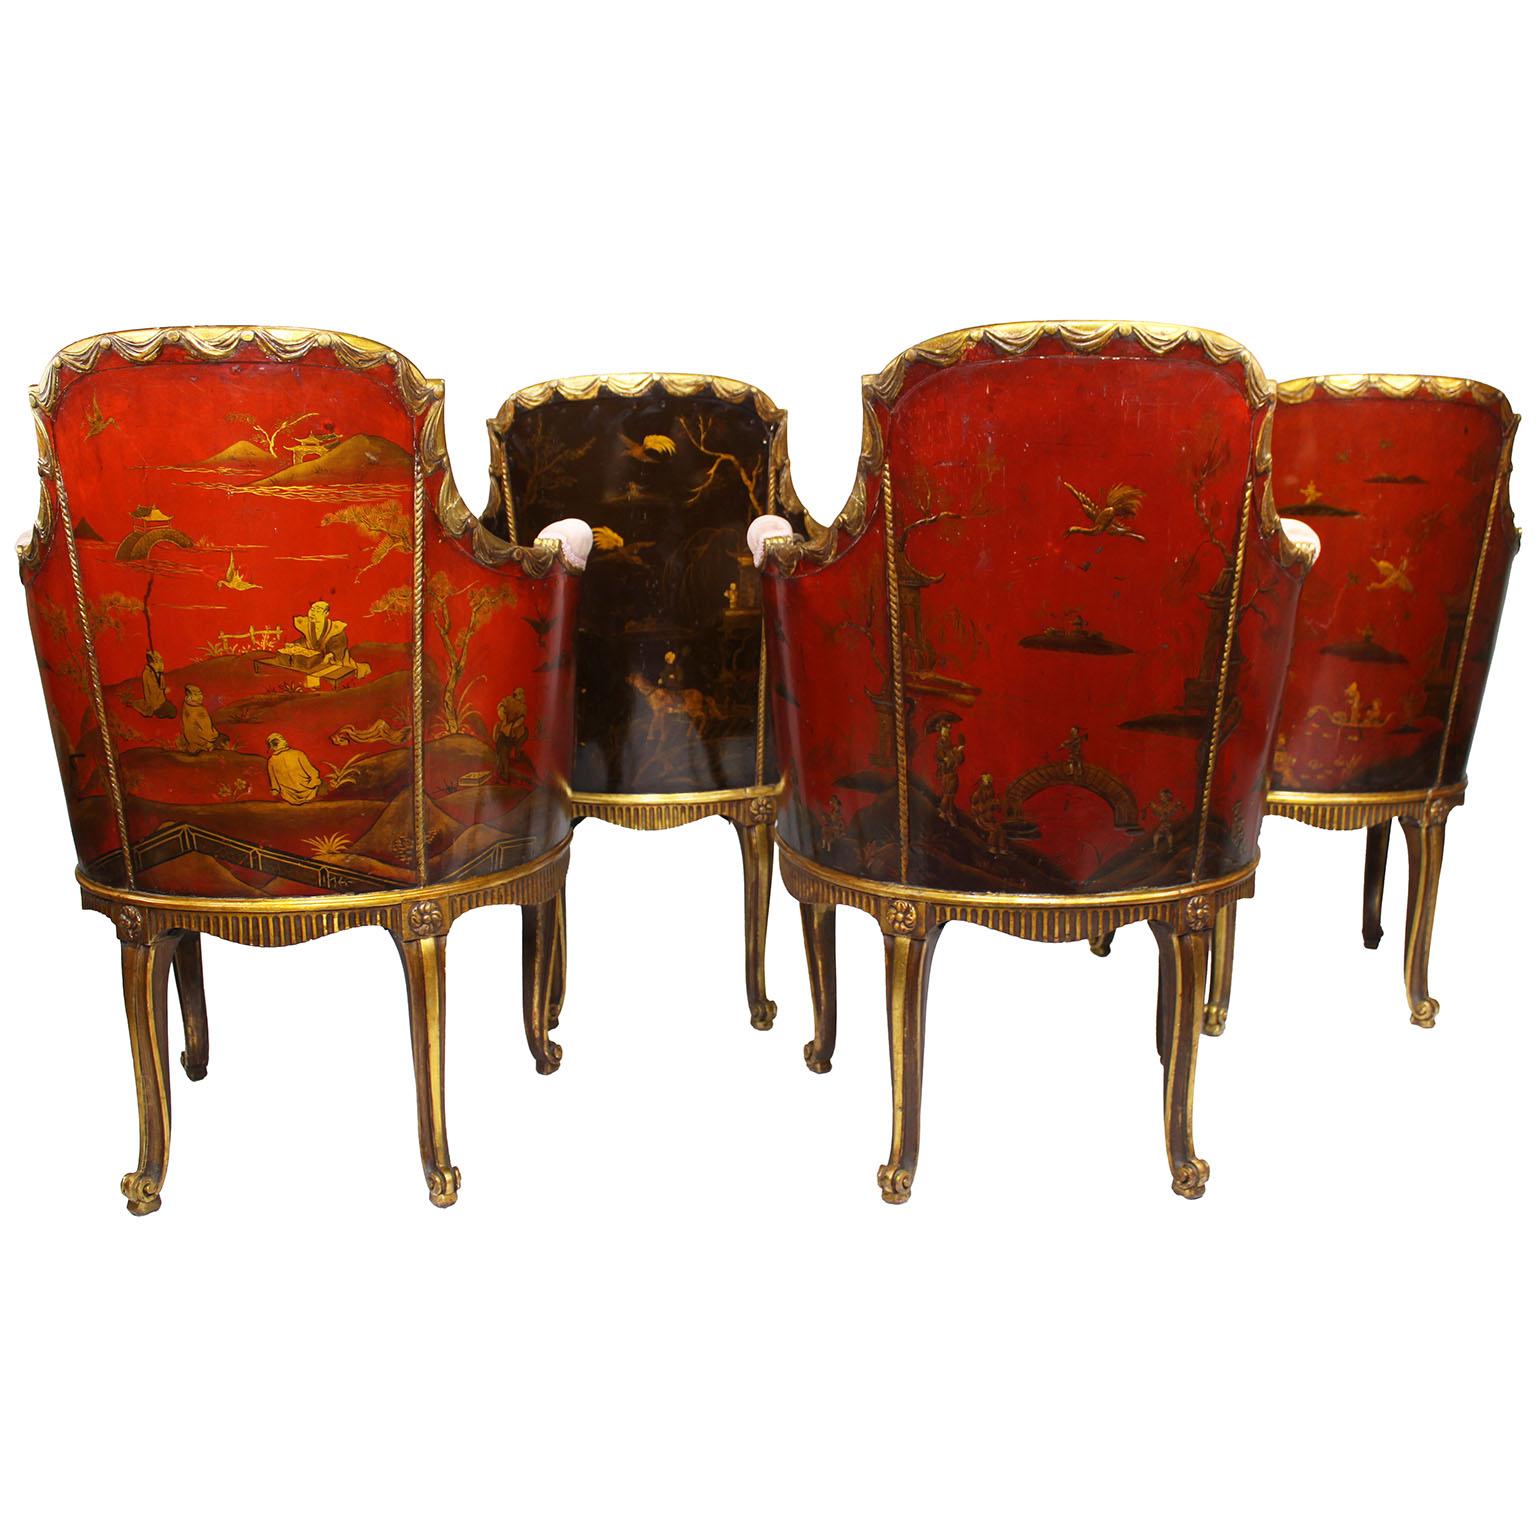 Très bel et rare ensemble de quatre fauteuils Bergers de style Louis XV en bois doré sculpté et en laque japonaise de Chinoiserie, attribués à la Maison Jansen. Les cadres en forme de tonneau arrondi avec le dossier rembourré, les côtés intérieurs